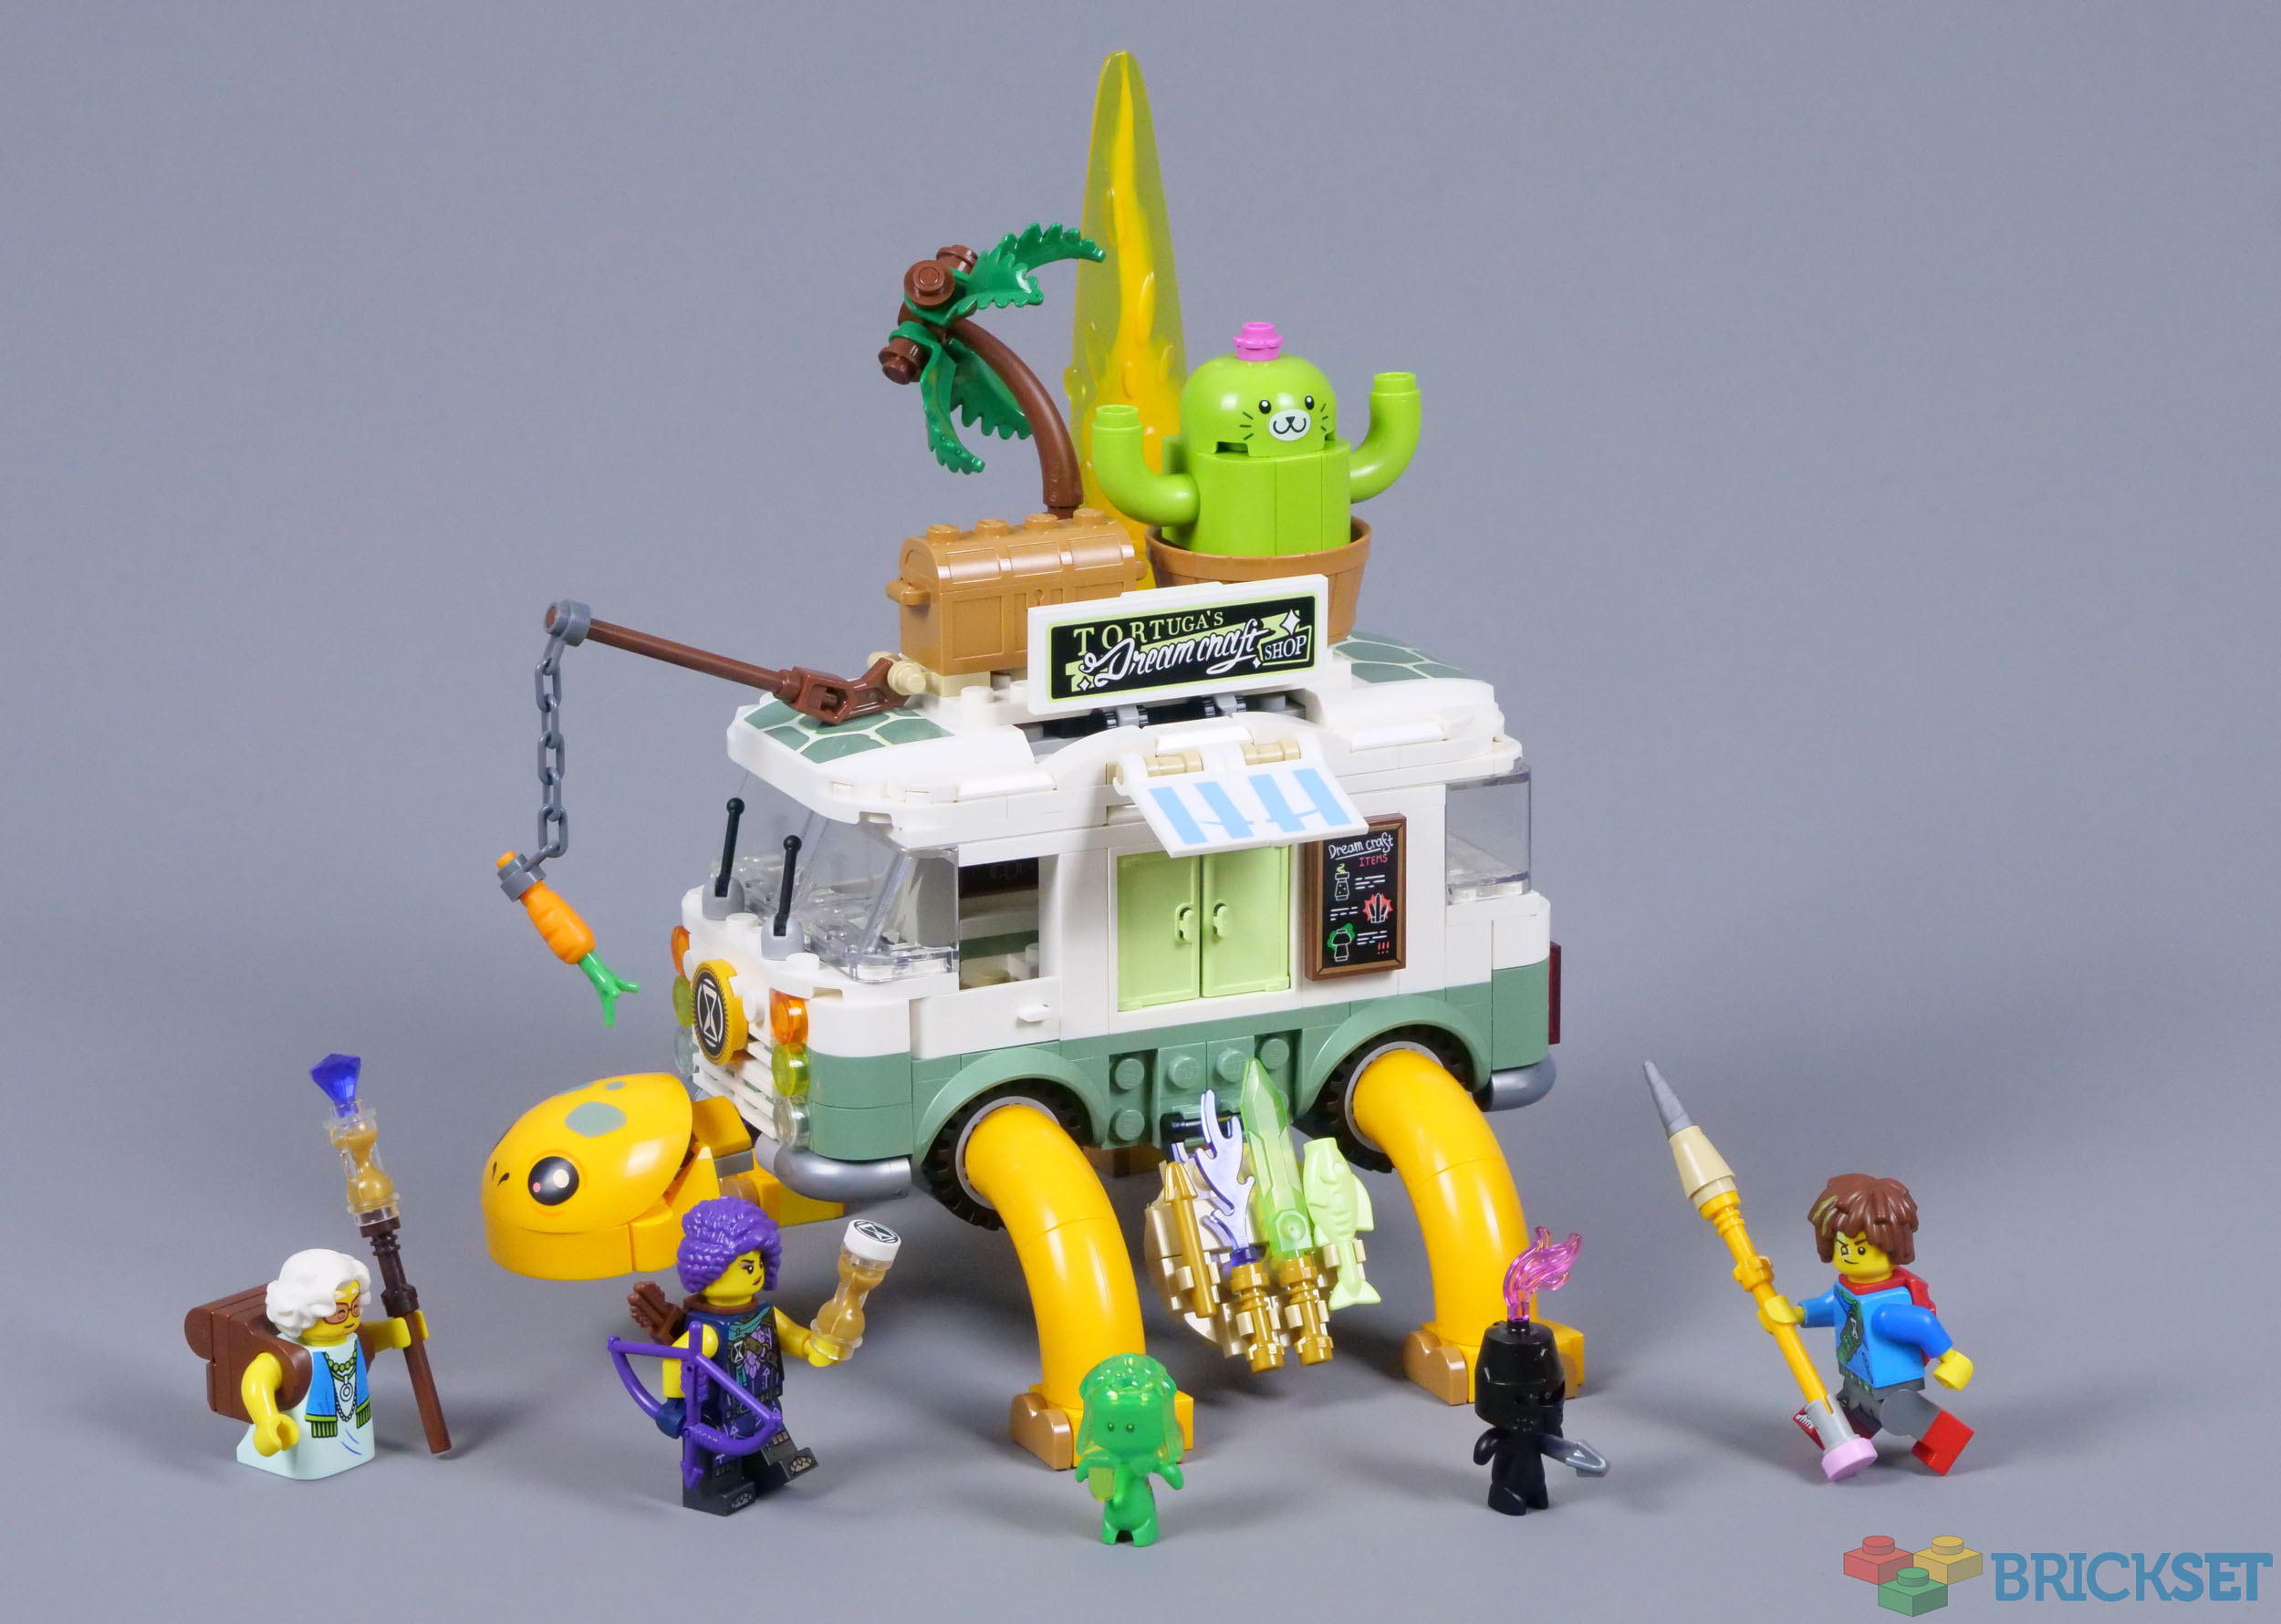 LEGO: Roblox- City Design (1st- 7th Grade)